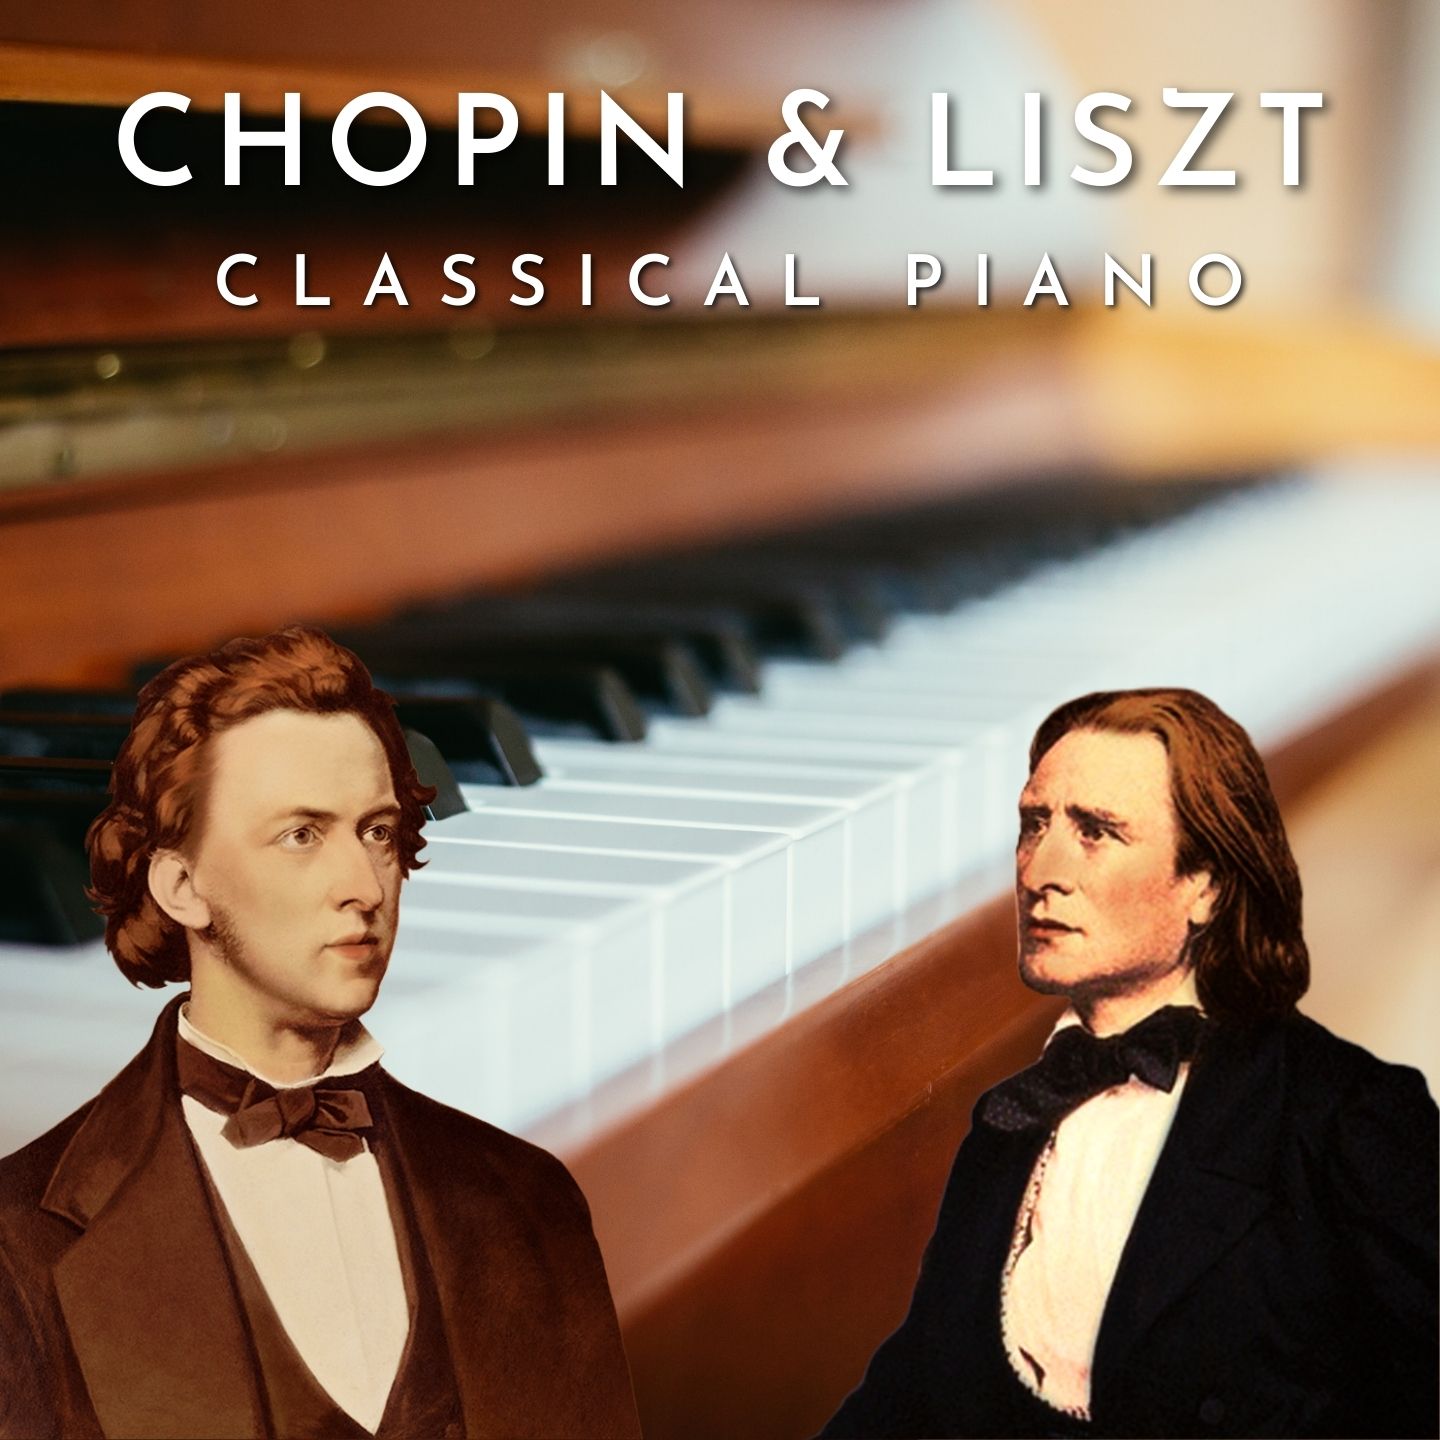 Chopin and Liszt